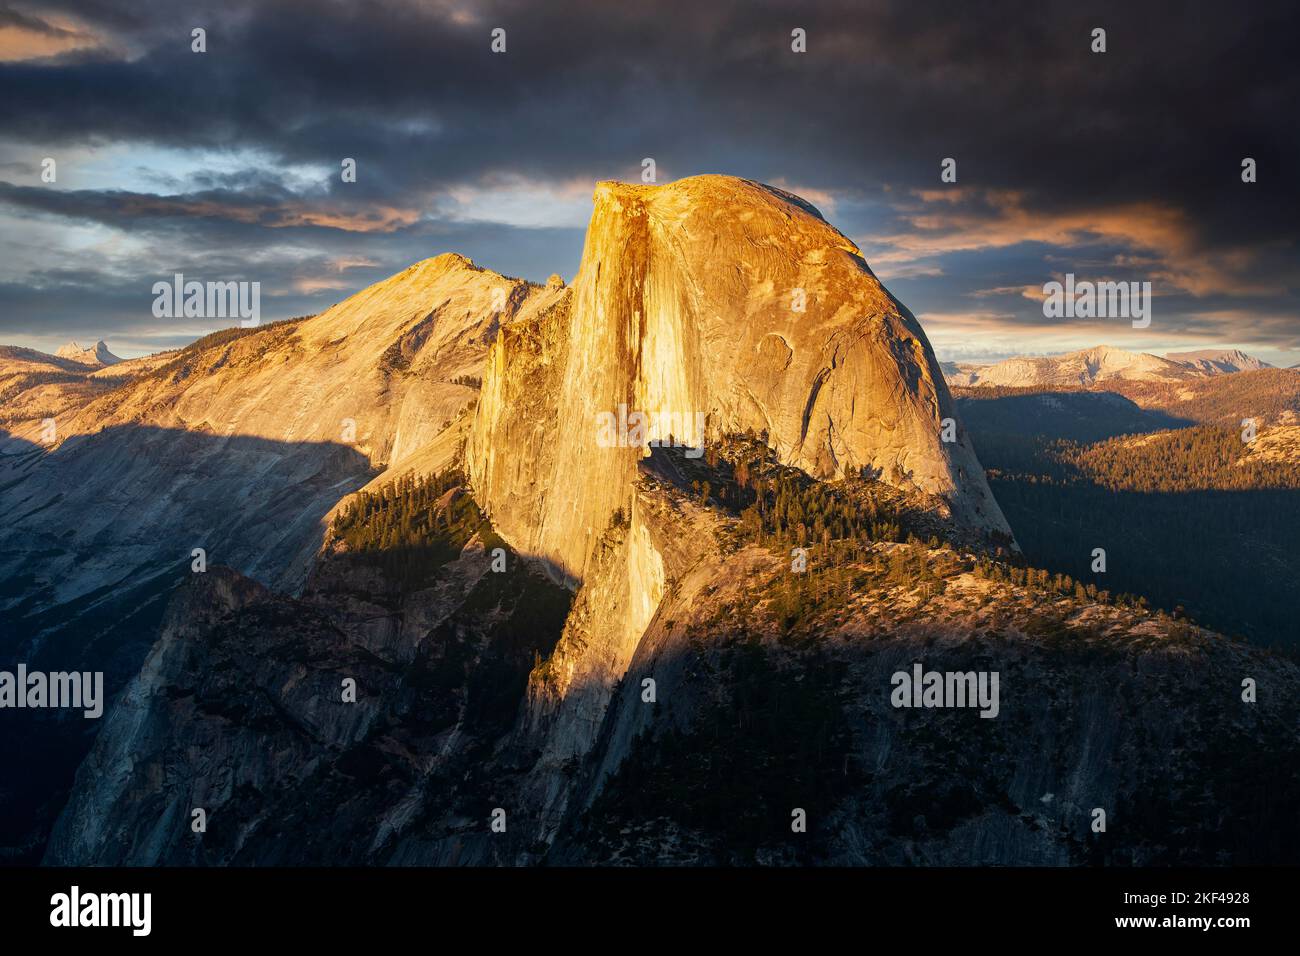 Half Dome im letzten Abendlicht, gesehen vom Glacier Point, Yosemite Nationalpark, Kalifornien, USA, Nordamerika Stock Photo